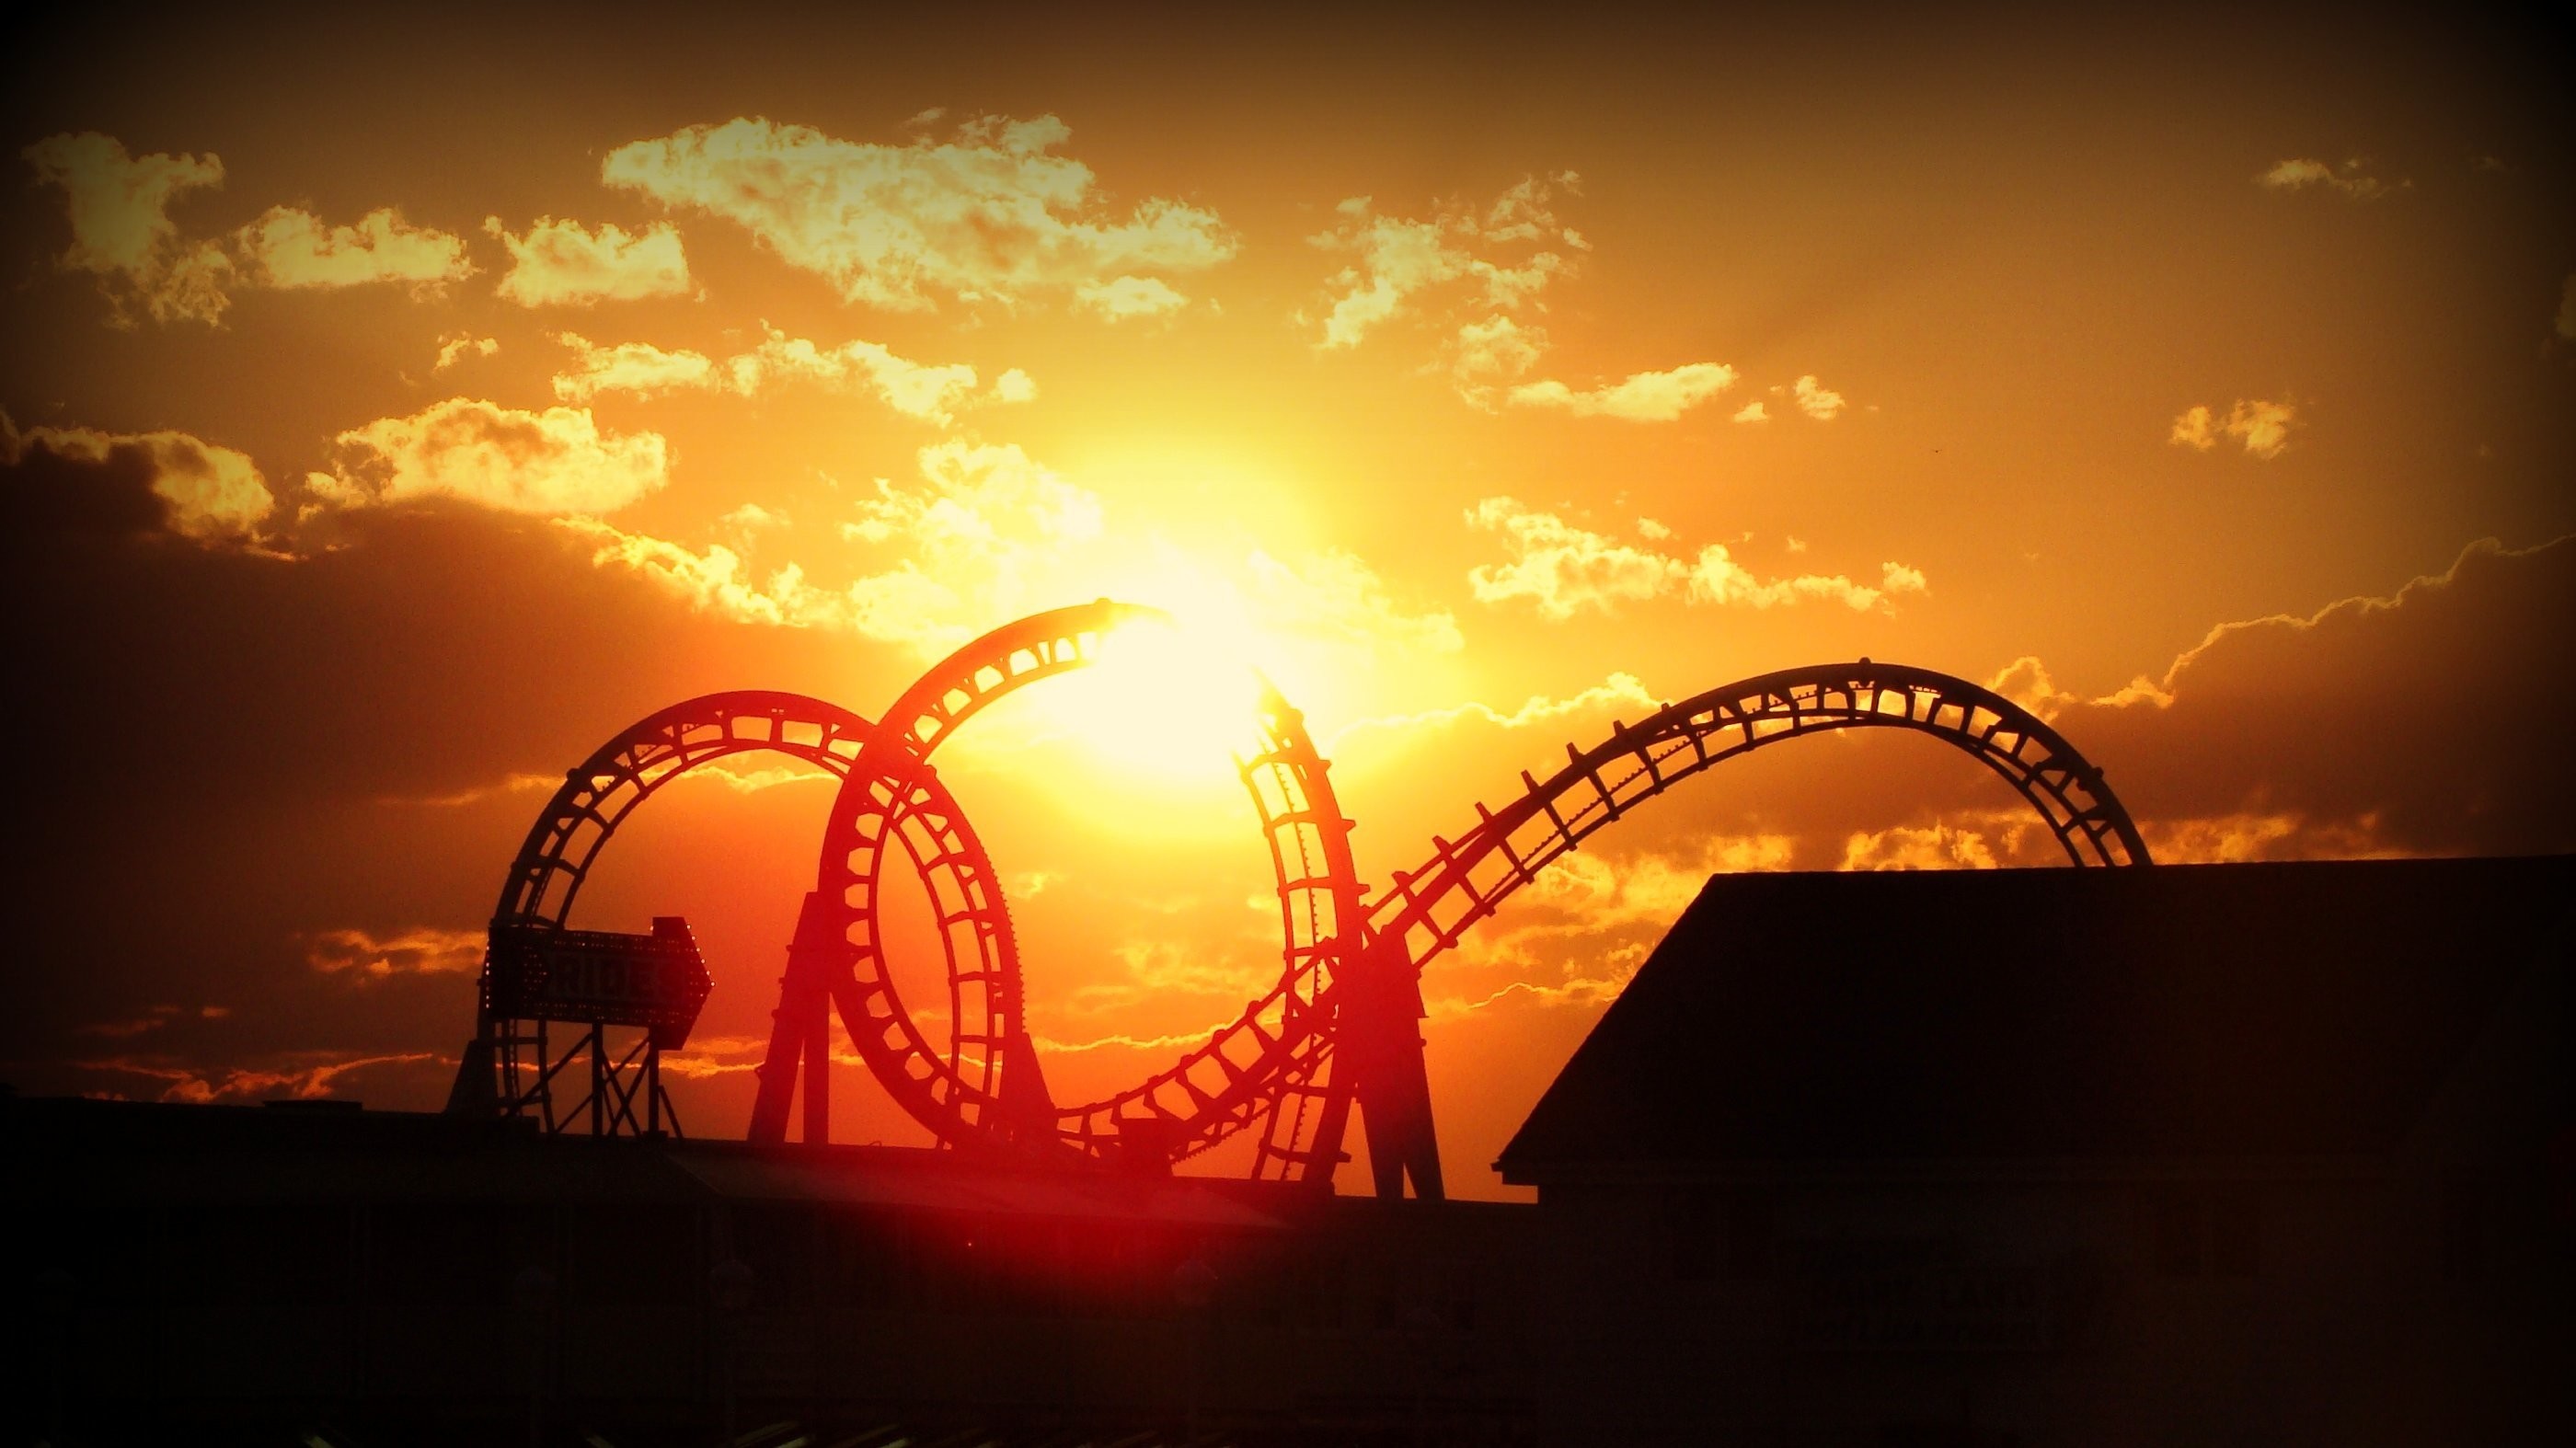 2800x1574 Roller coaster amusement park fun rides 1roll adventure summer wallpaper |   | 663407 | WallpaperUP